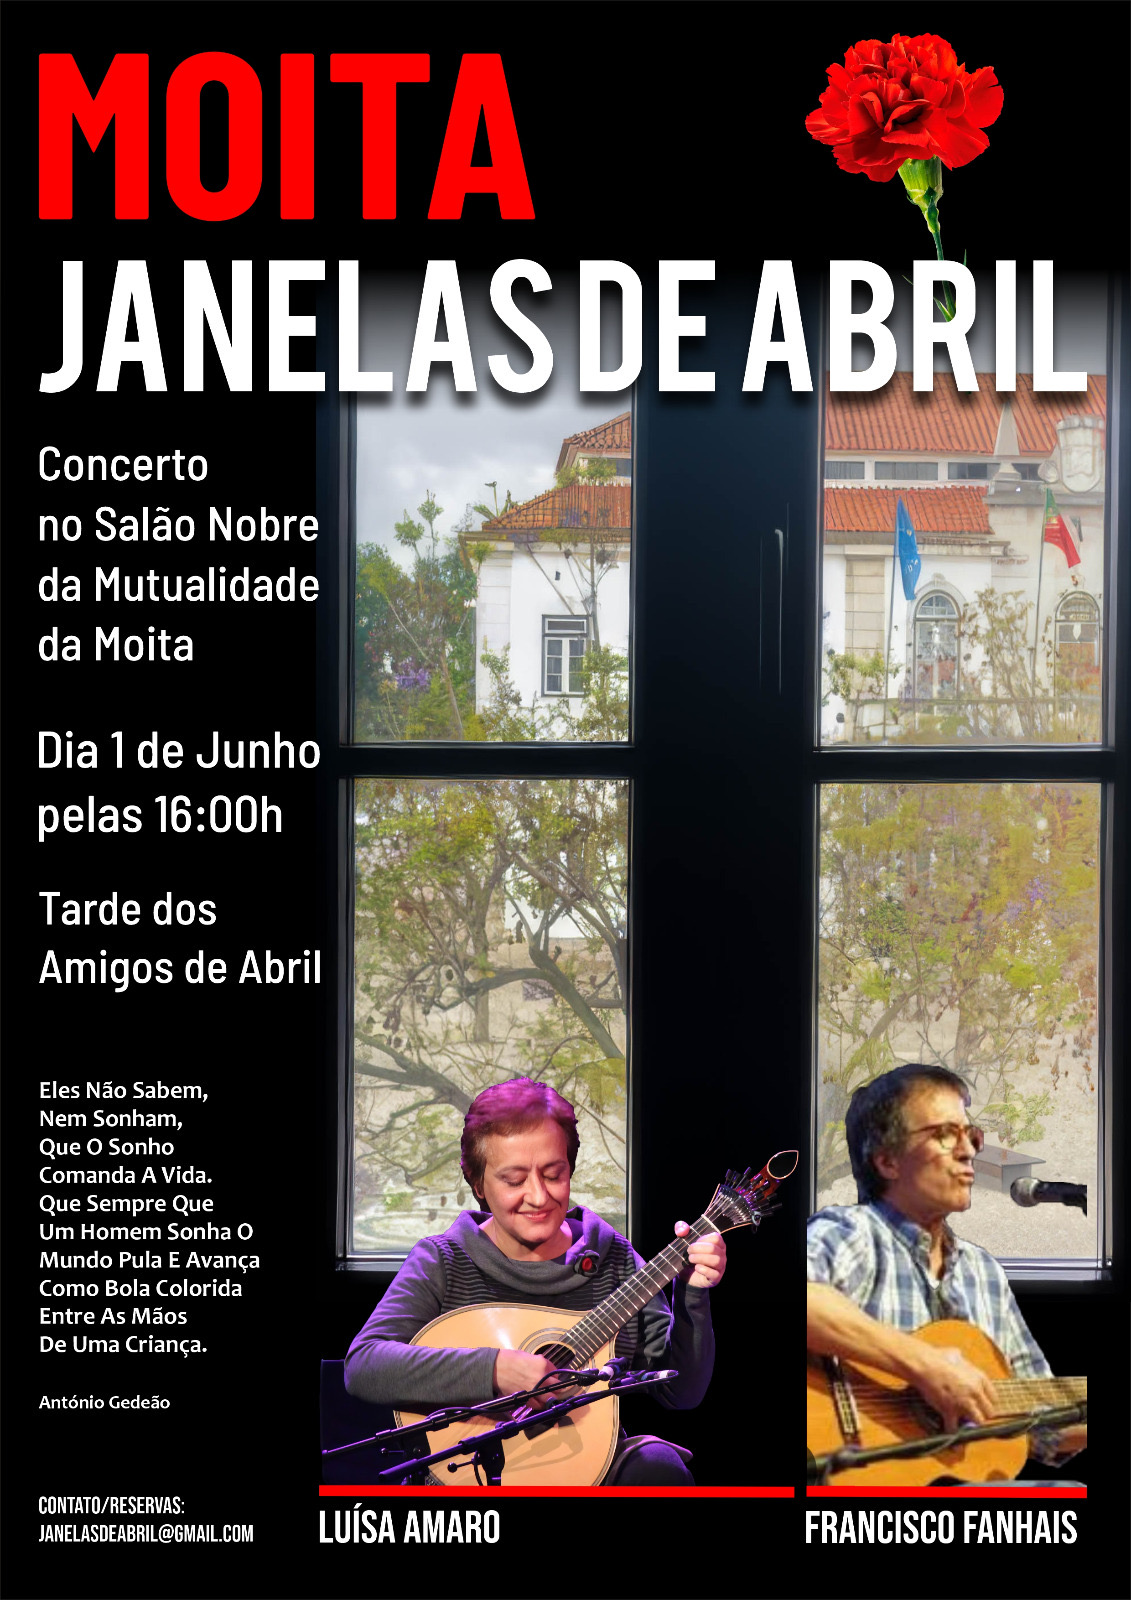 Capa Oficial do Evento JANELAS DE ABRIL 